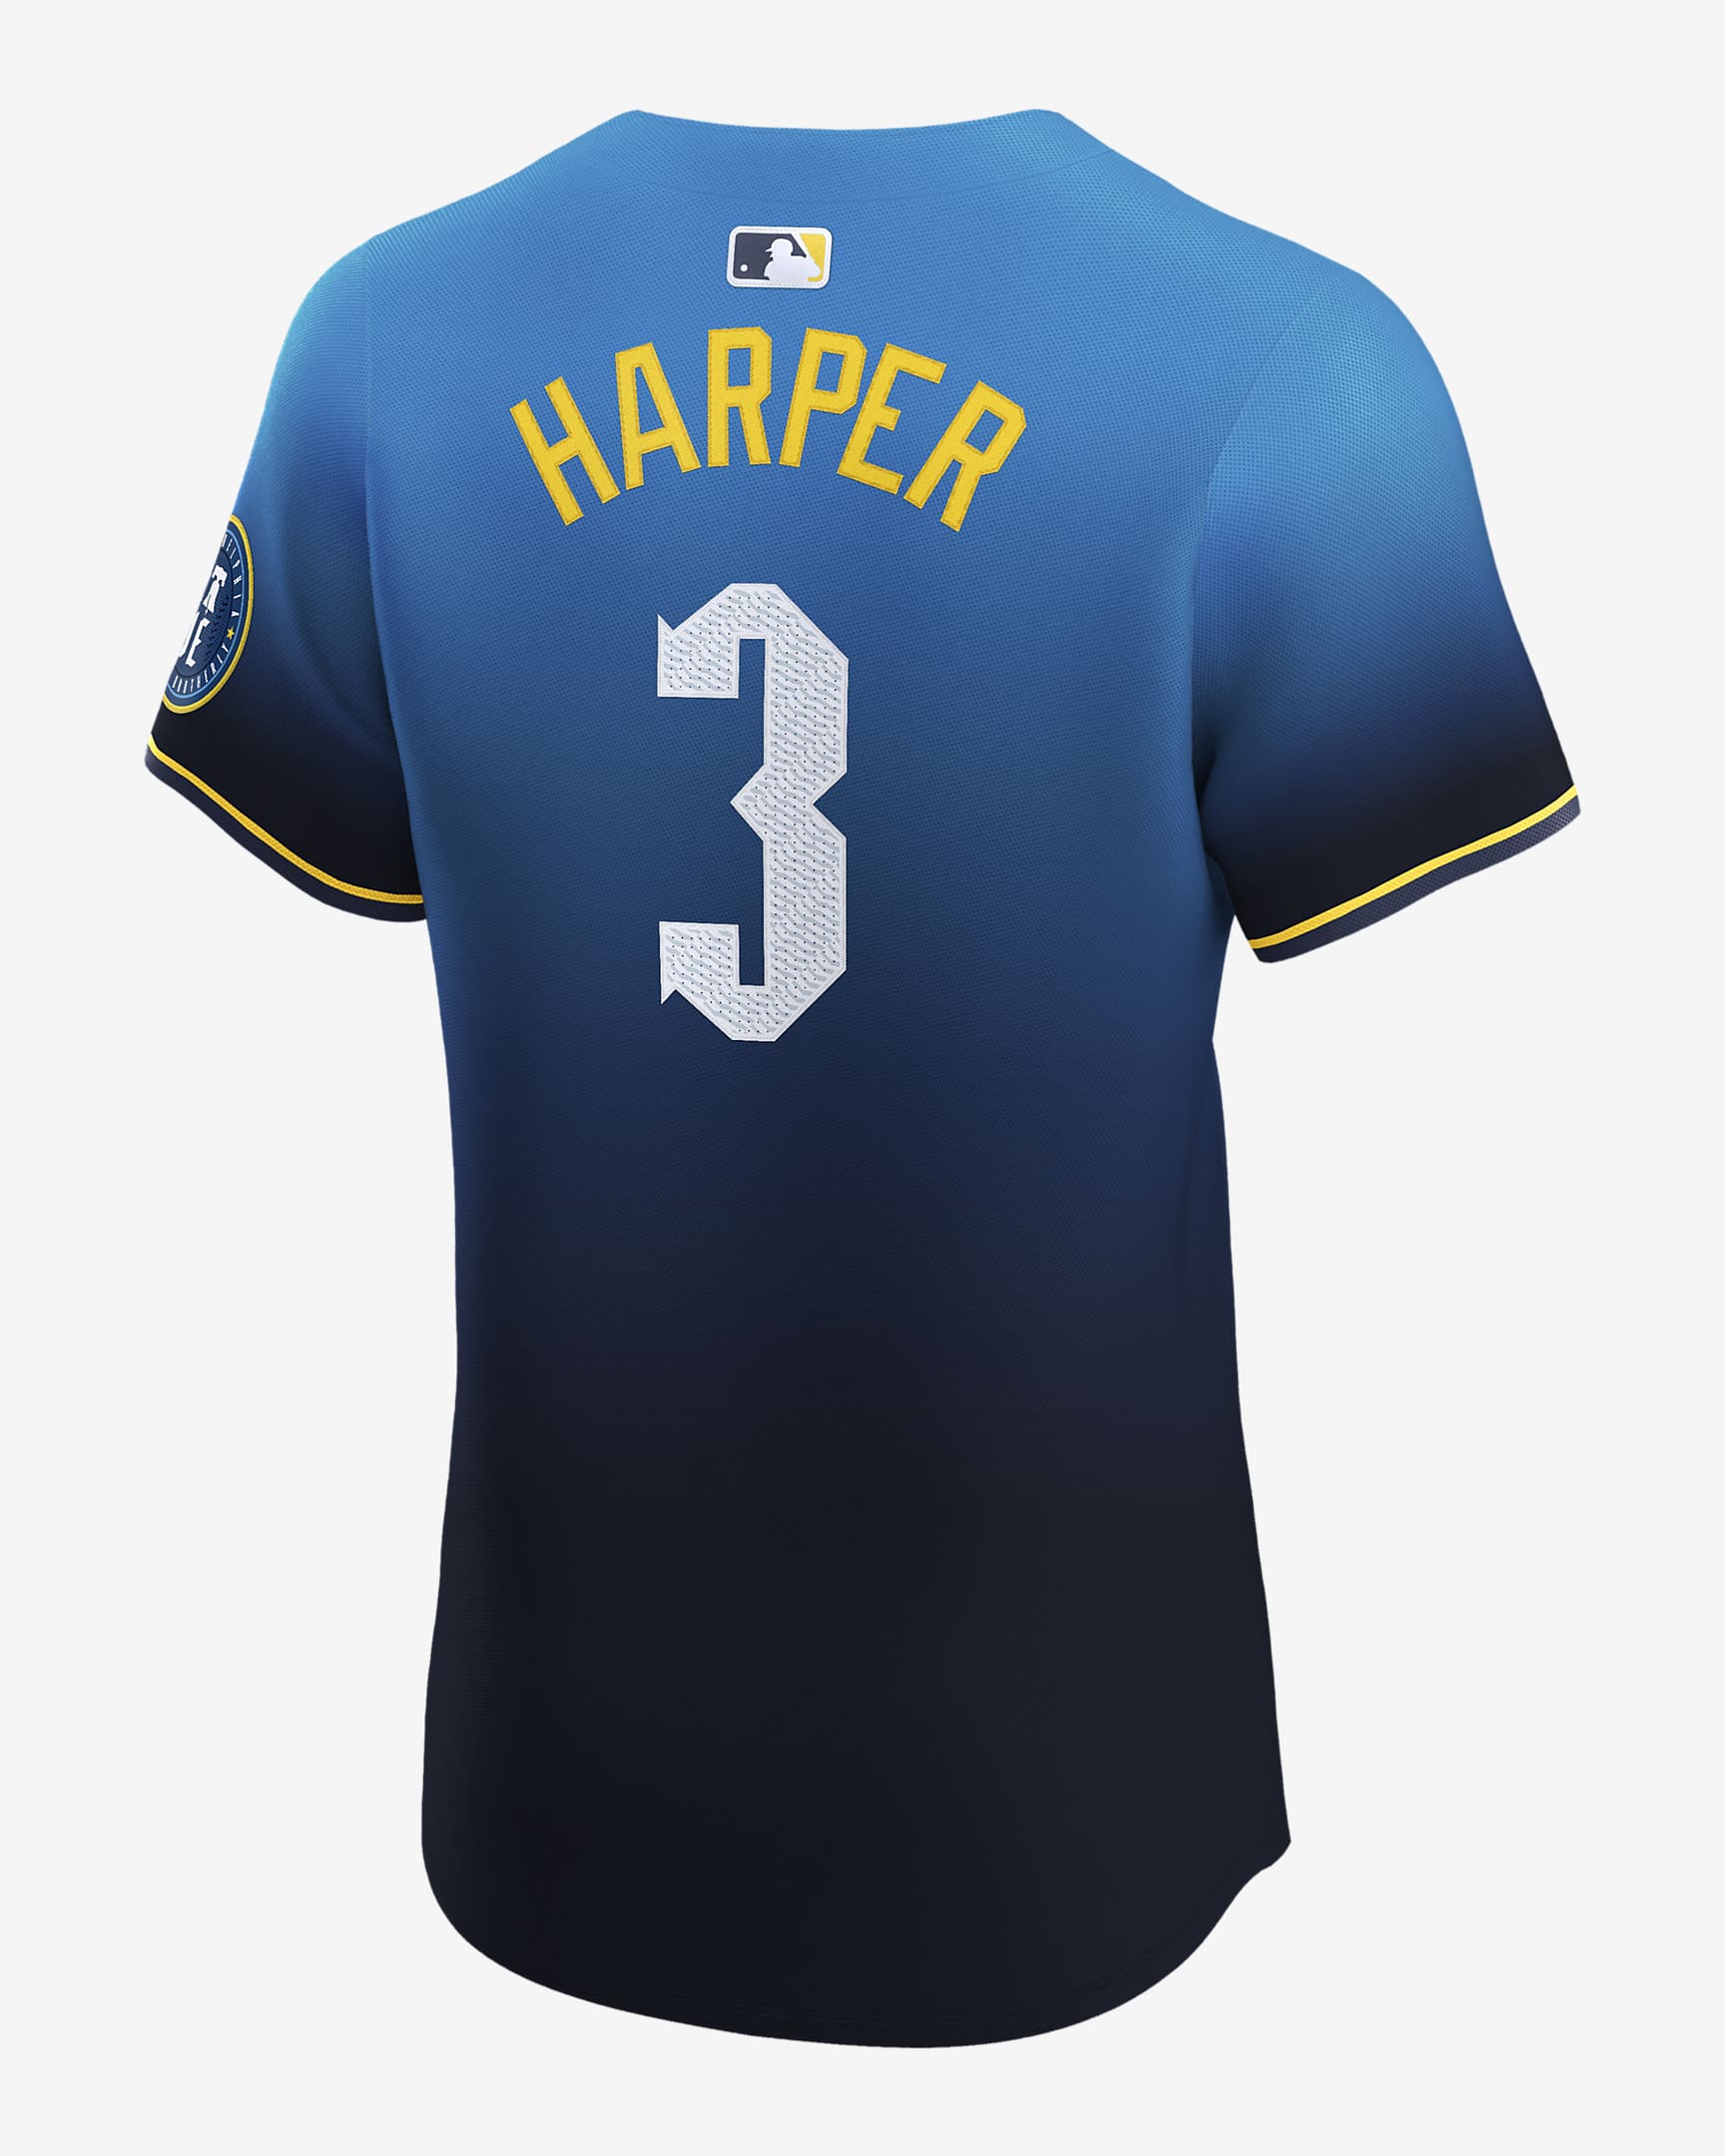 Jersey Nike DriFIT ADV de la MLB Elite para hombre Bryce Harper